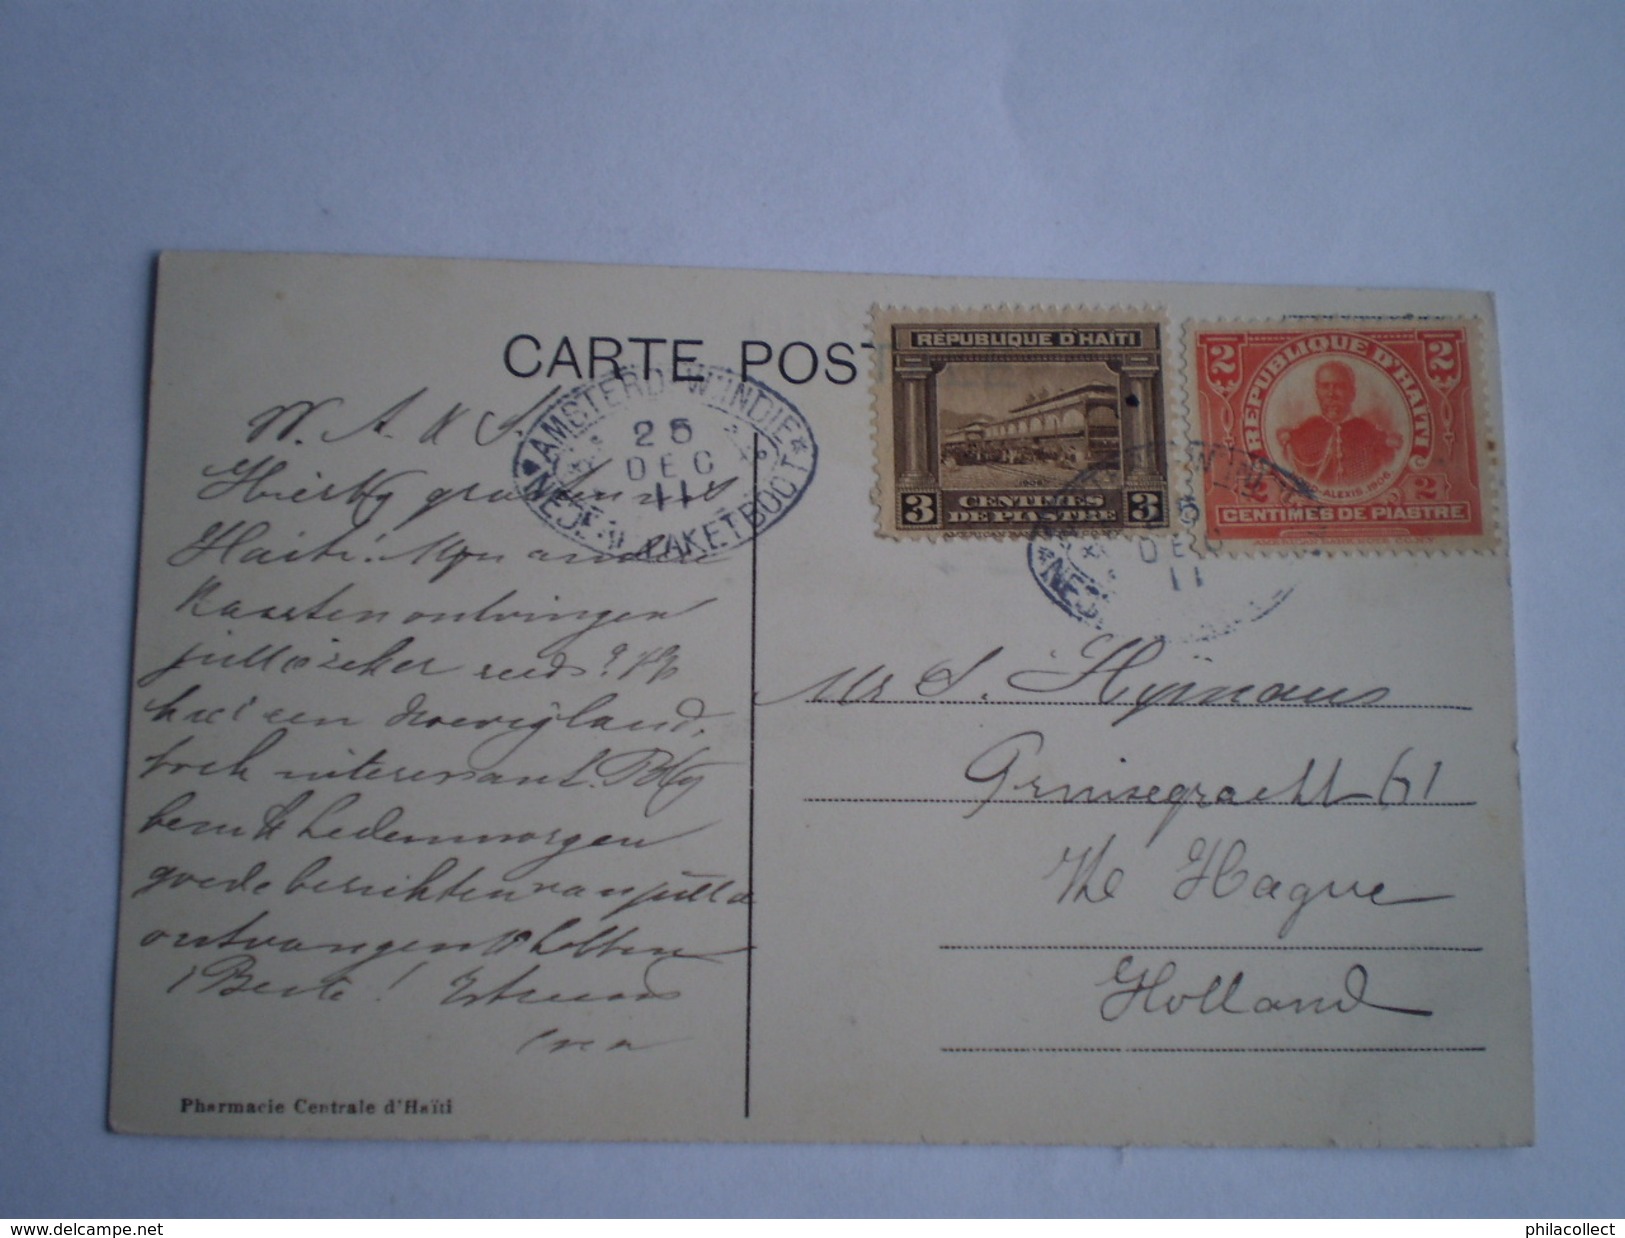 Haïti // Port Au Price // Vue Des Deux Cathedrales (animee) Nice Stamps And Amsterd.WIndie Pakketboot Stempel! 1911 - Haïti